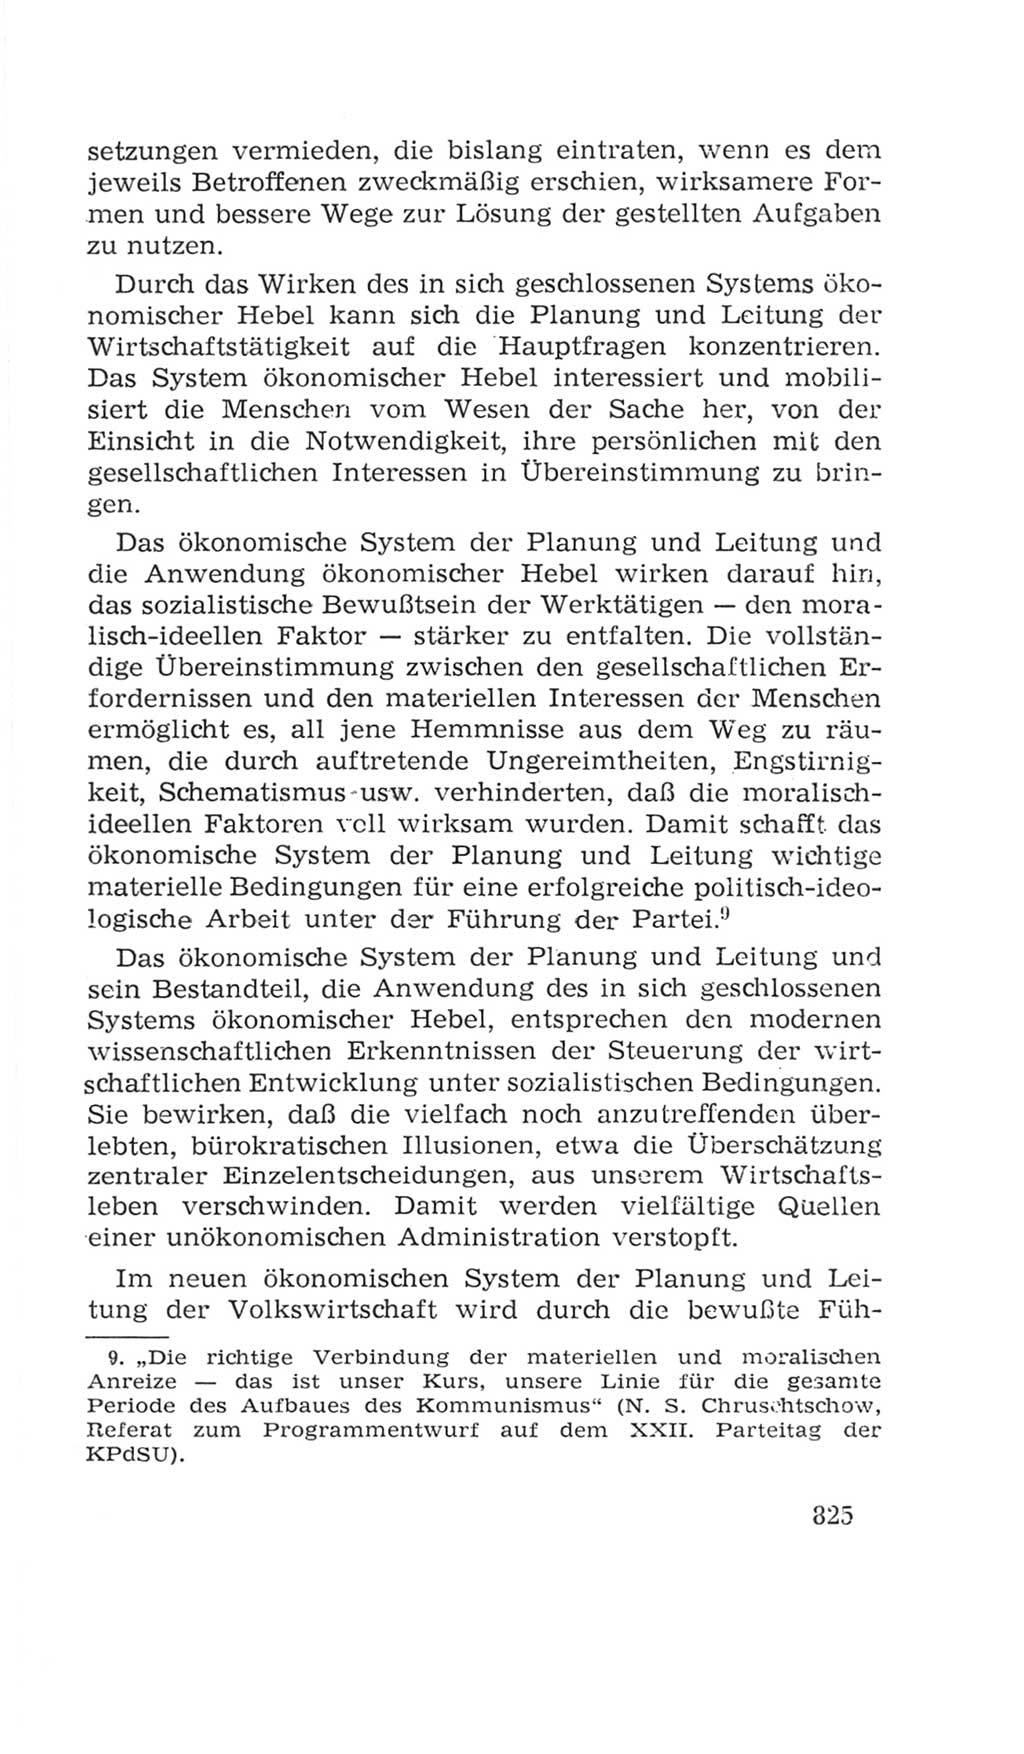 Volkskammer (VK) der Deutschen Demokratischen Republik (DDR), 4. Wahlperiode 1963-1967, Seite 825 (VK. DDR 4. WP. 1963-1967, S. 825)